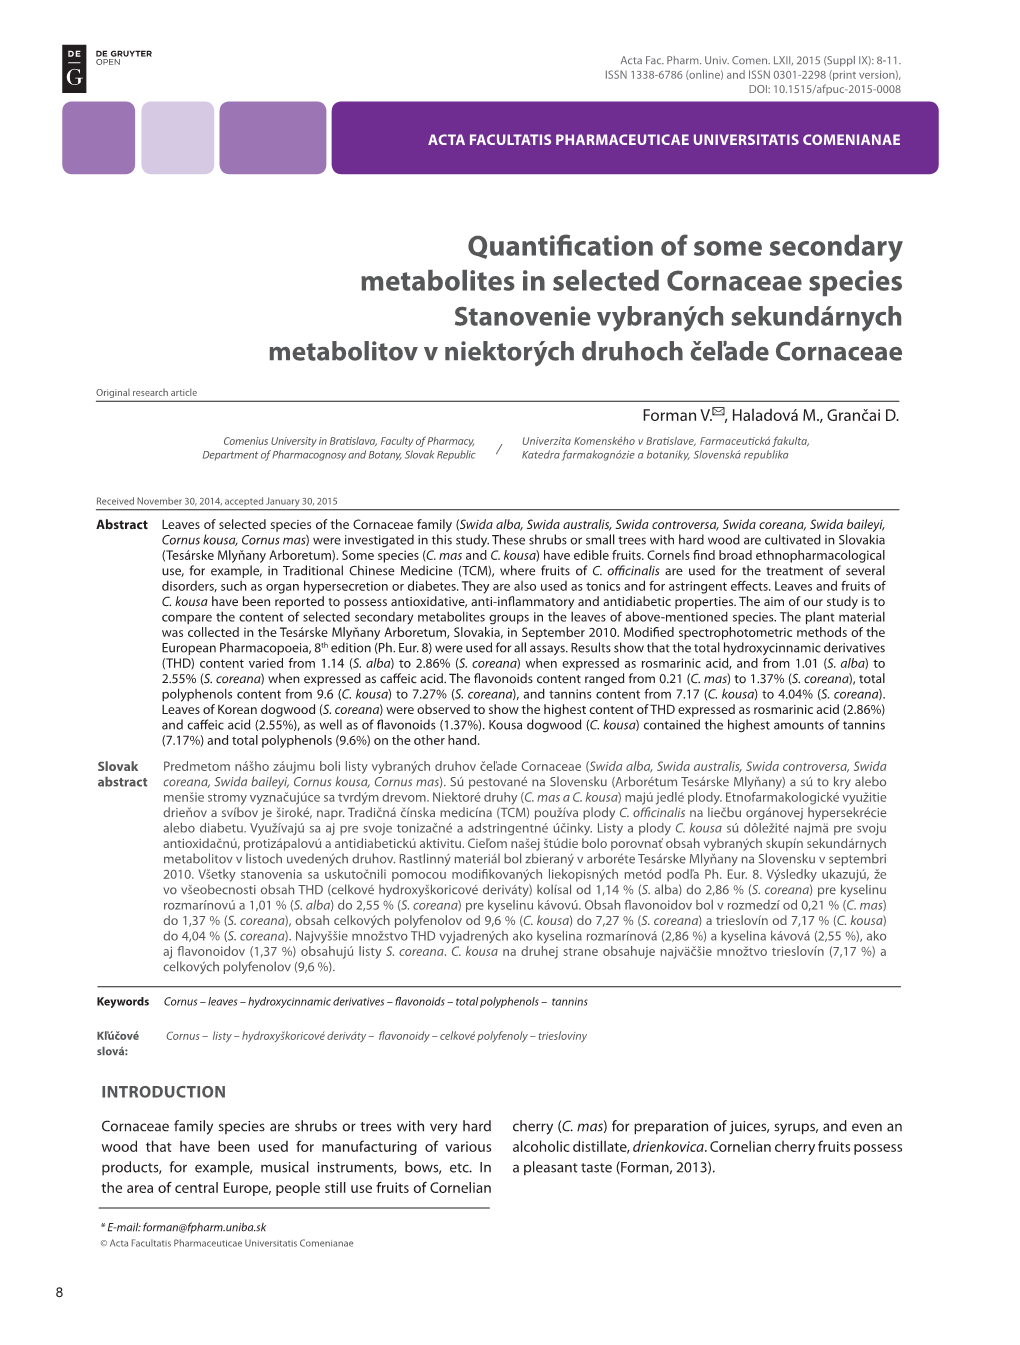 Quantification of Some Secondary Metabolites in Selected Cornaceae Species Stanovenie Vybraných Sekundárnych Metabolitov V Niektorých Druhoch Čeľade Cornaceae